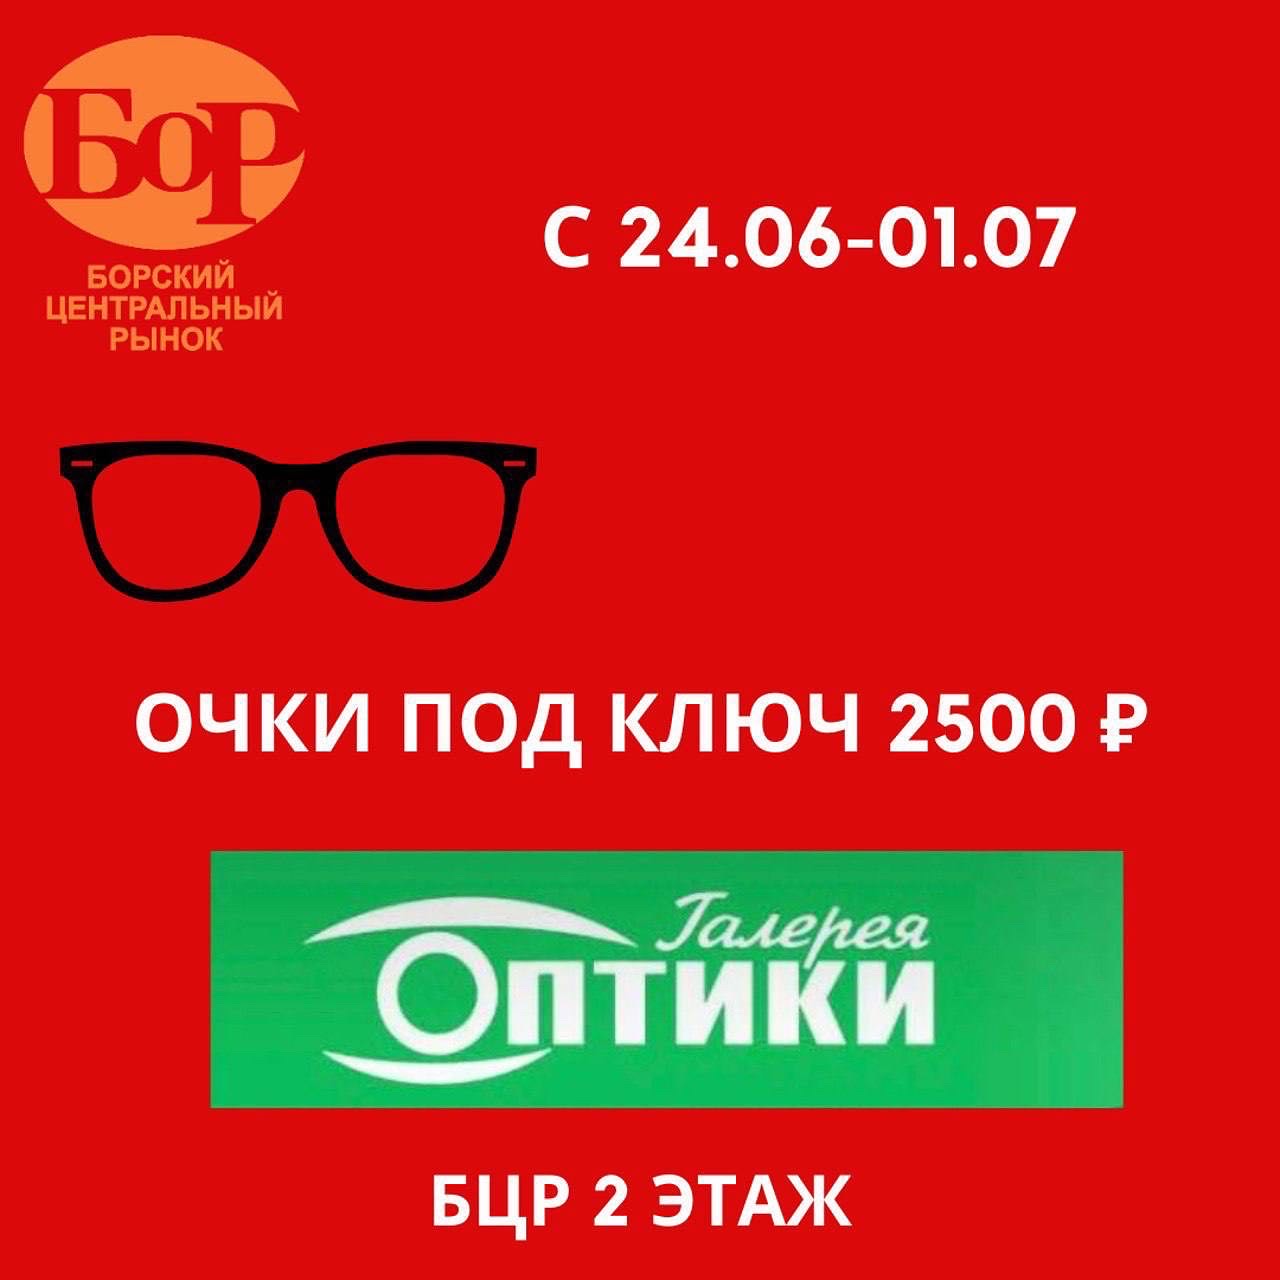 Очки под ключ за 2500 рублей!